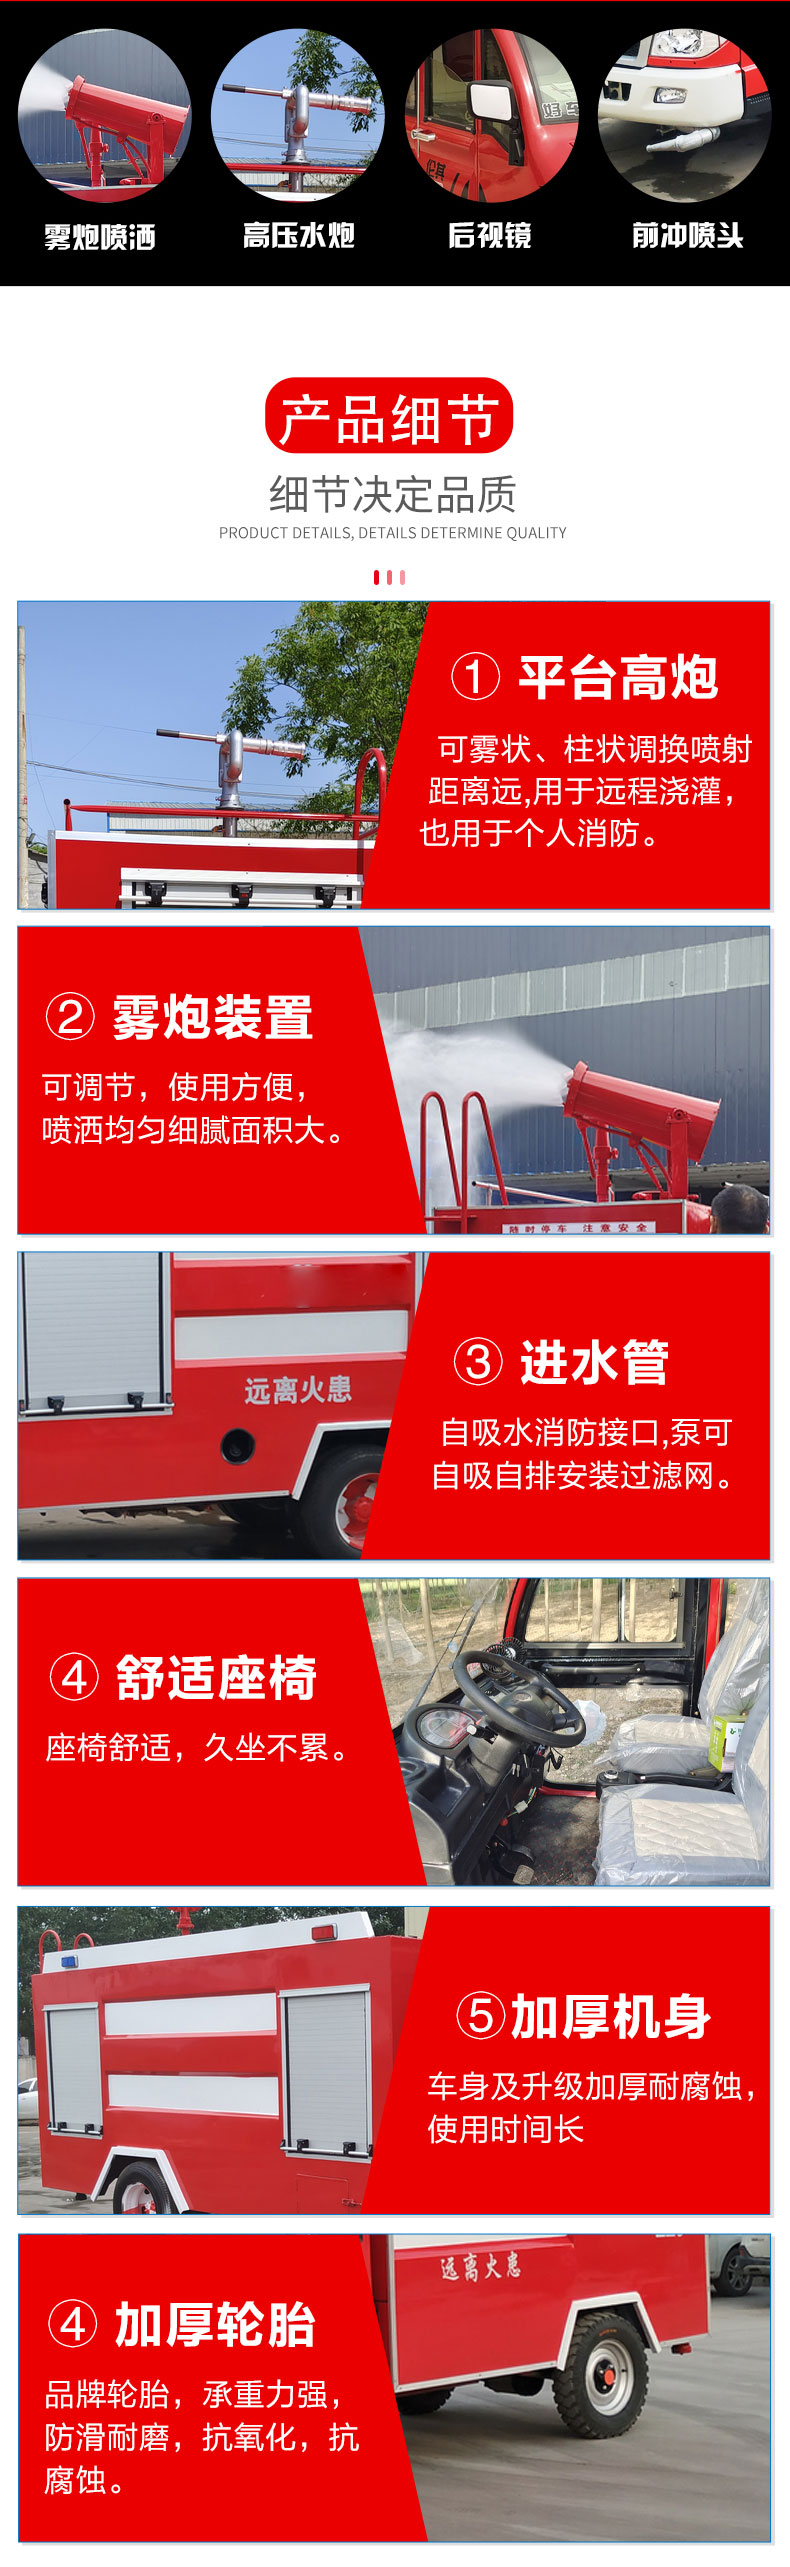 水罐东风消防车 小型多功能消防车 大型5吨消防车